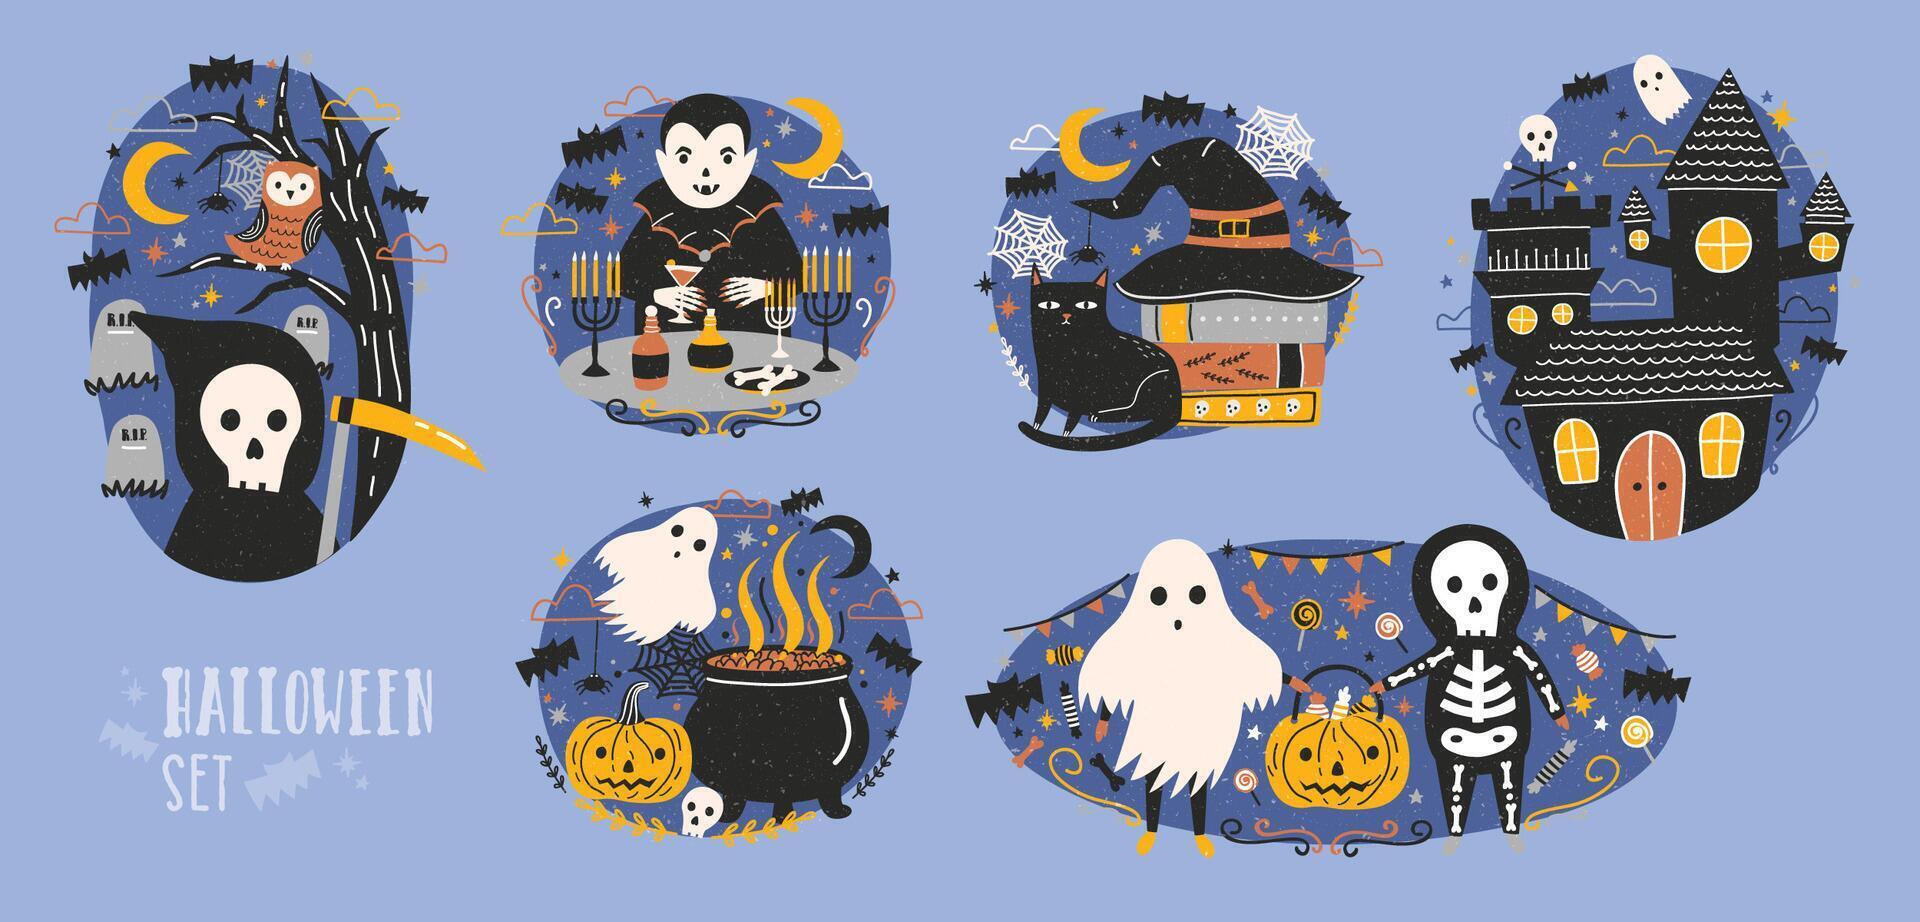 samling av halloween scener med söt och rolig fe- tecknad serie tecken - dyster skördeman, vampyr, spöke, Pumpalykta eller pumpa lykta, Uggla, svart katt. platt färgrik vektor illustration.